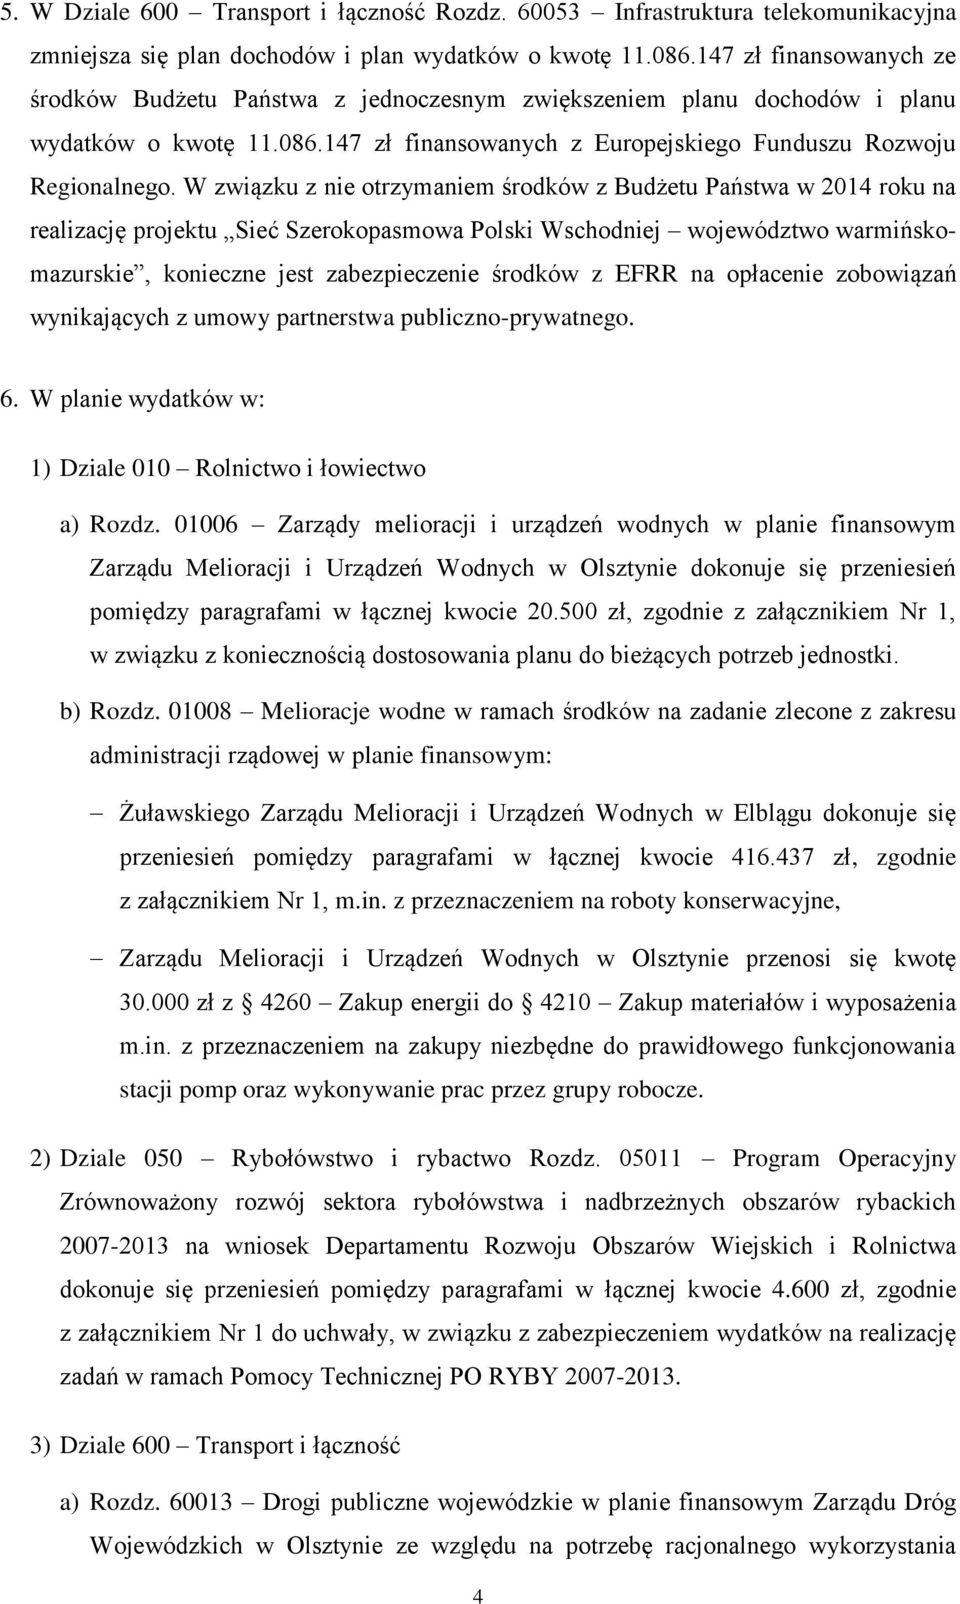 W związku z nie otrzymaniem środków z Budżetu Państwa w 2014 roku na realizację projektu Sieć Szerokopasmowa Polski Wschodniej województwo warmińskomazurskie, konieczne jest zabezpieczenie środków z